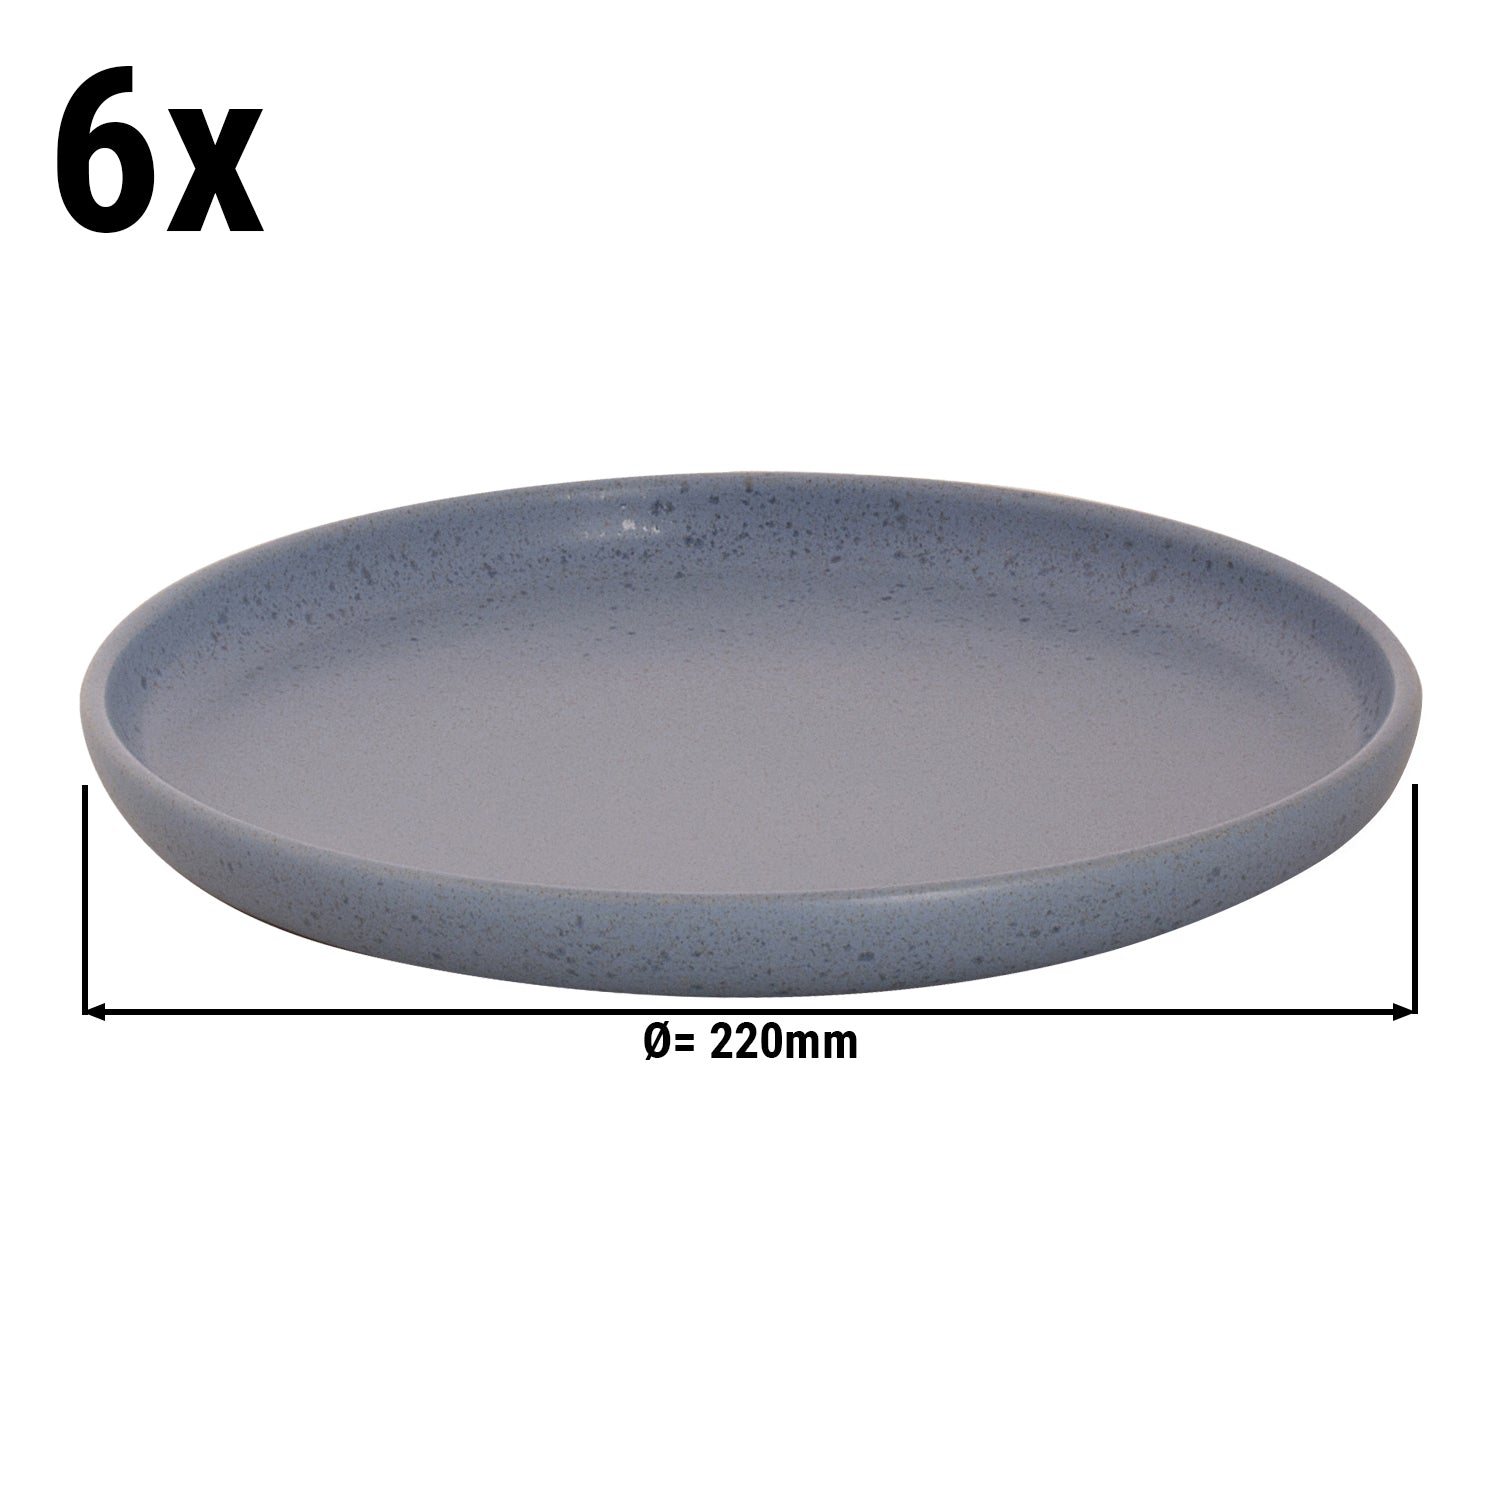 (6 stk) SANDLEID - Flat tallerken - Ø 22 cm - Blå